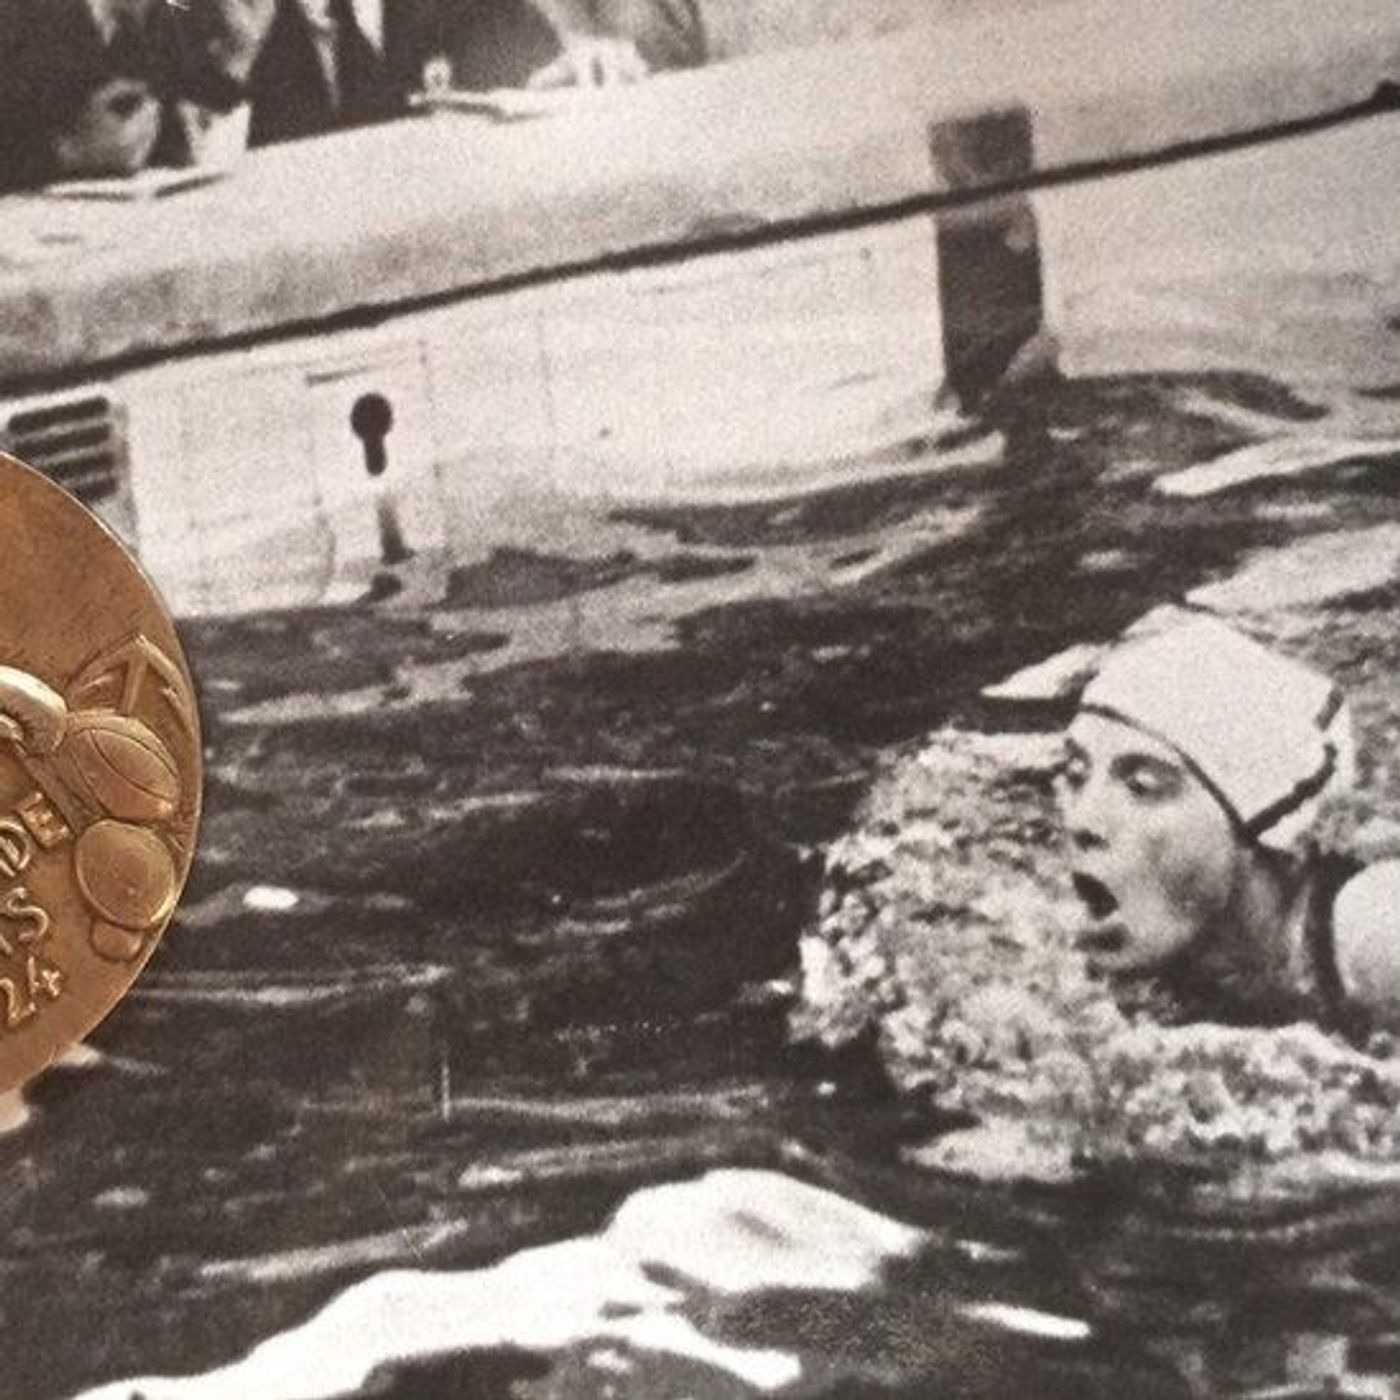 Il nuoto alle Olimpiadi: dalle gare in mare alla piscina da 50m